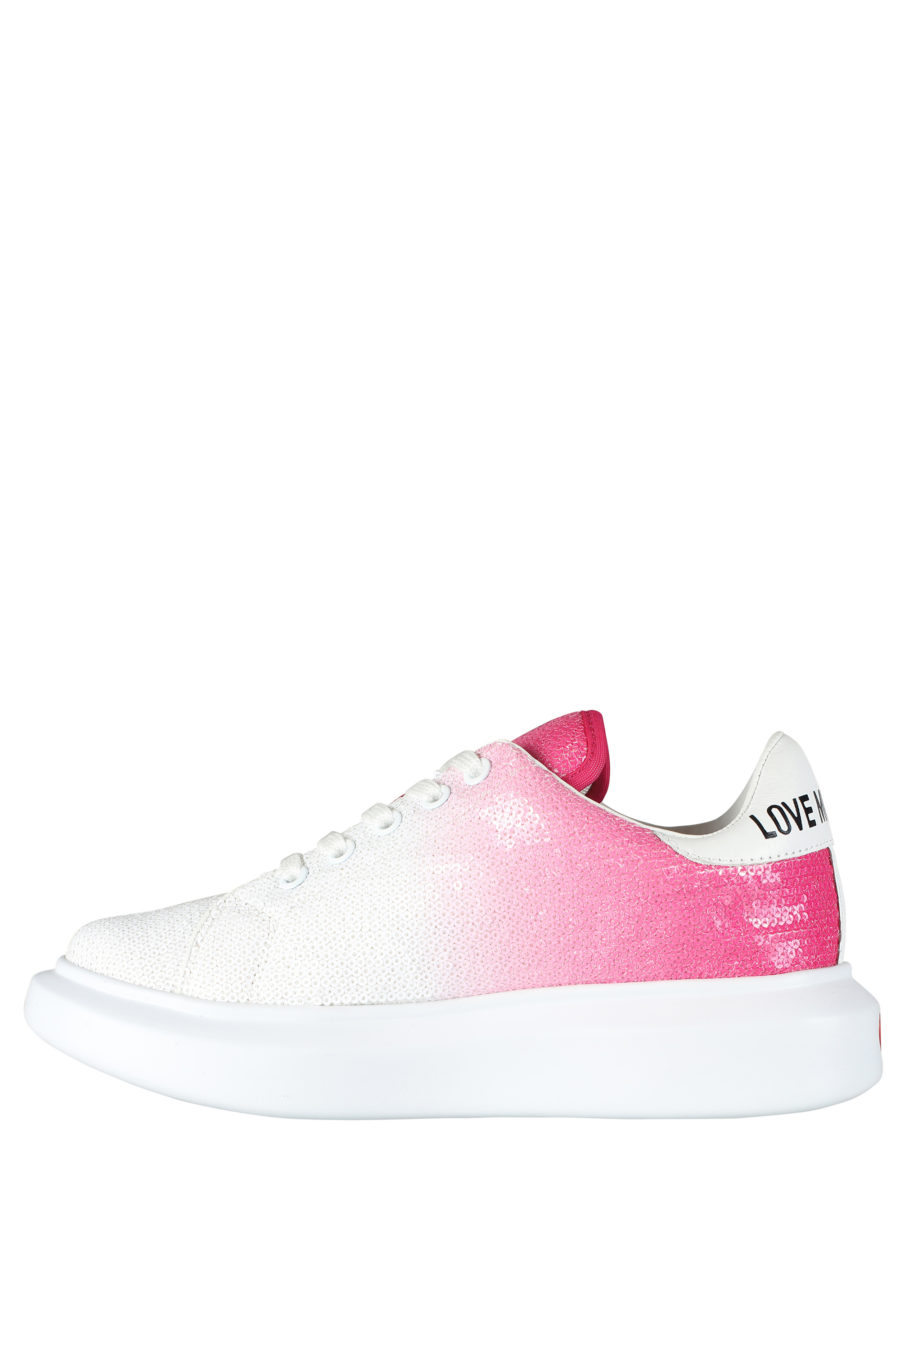 Sapatilhas brancas com gradiente rosa e lantejoulas - IMG 5264